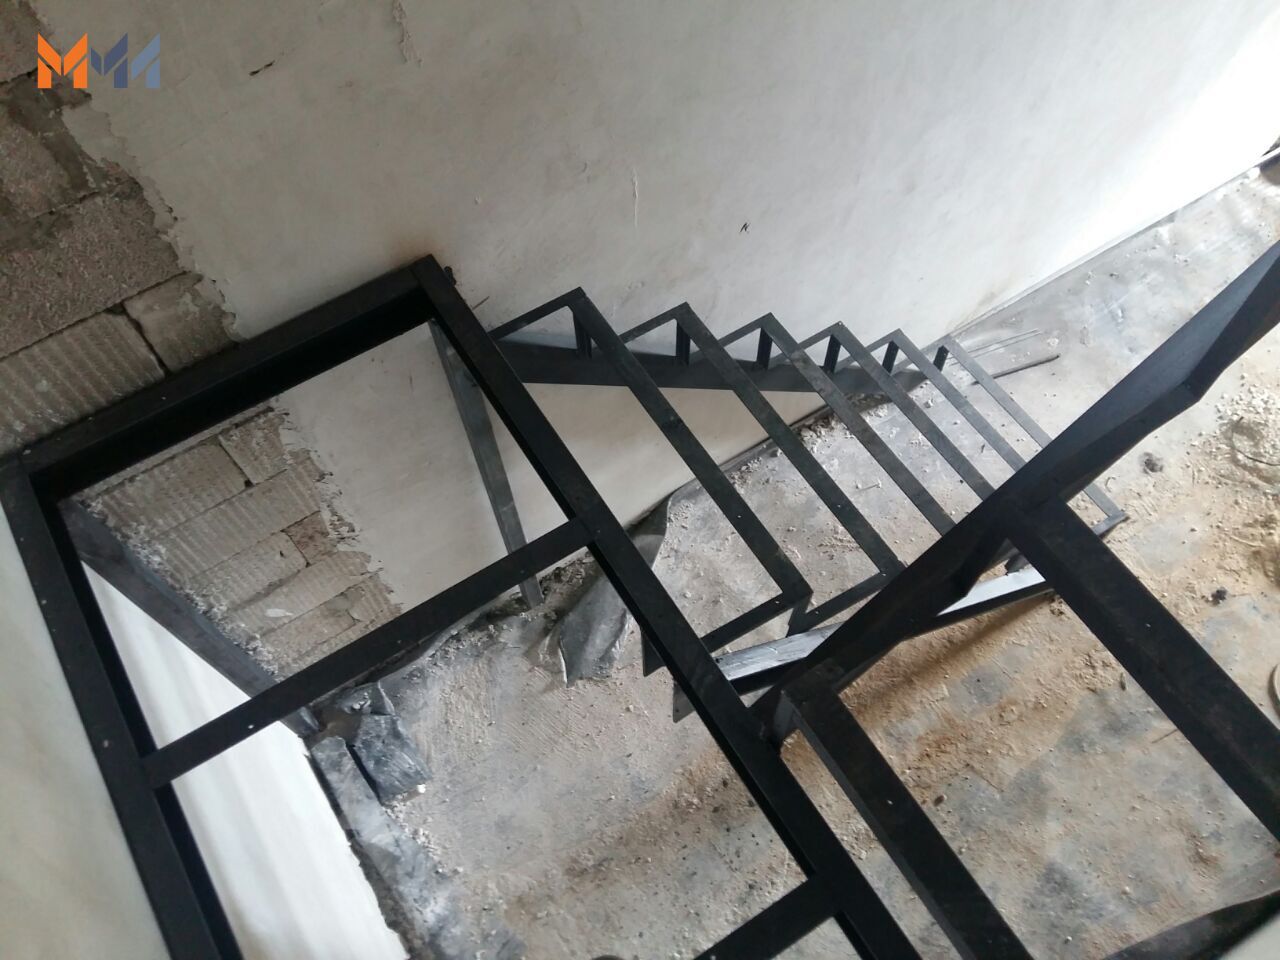 Лестница с площадкой